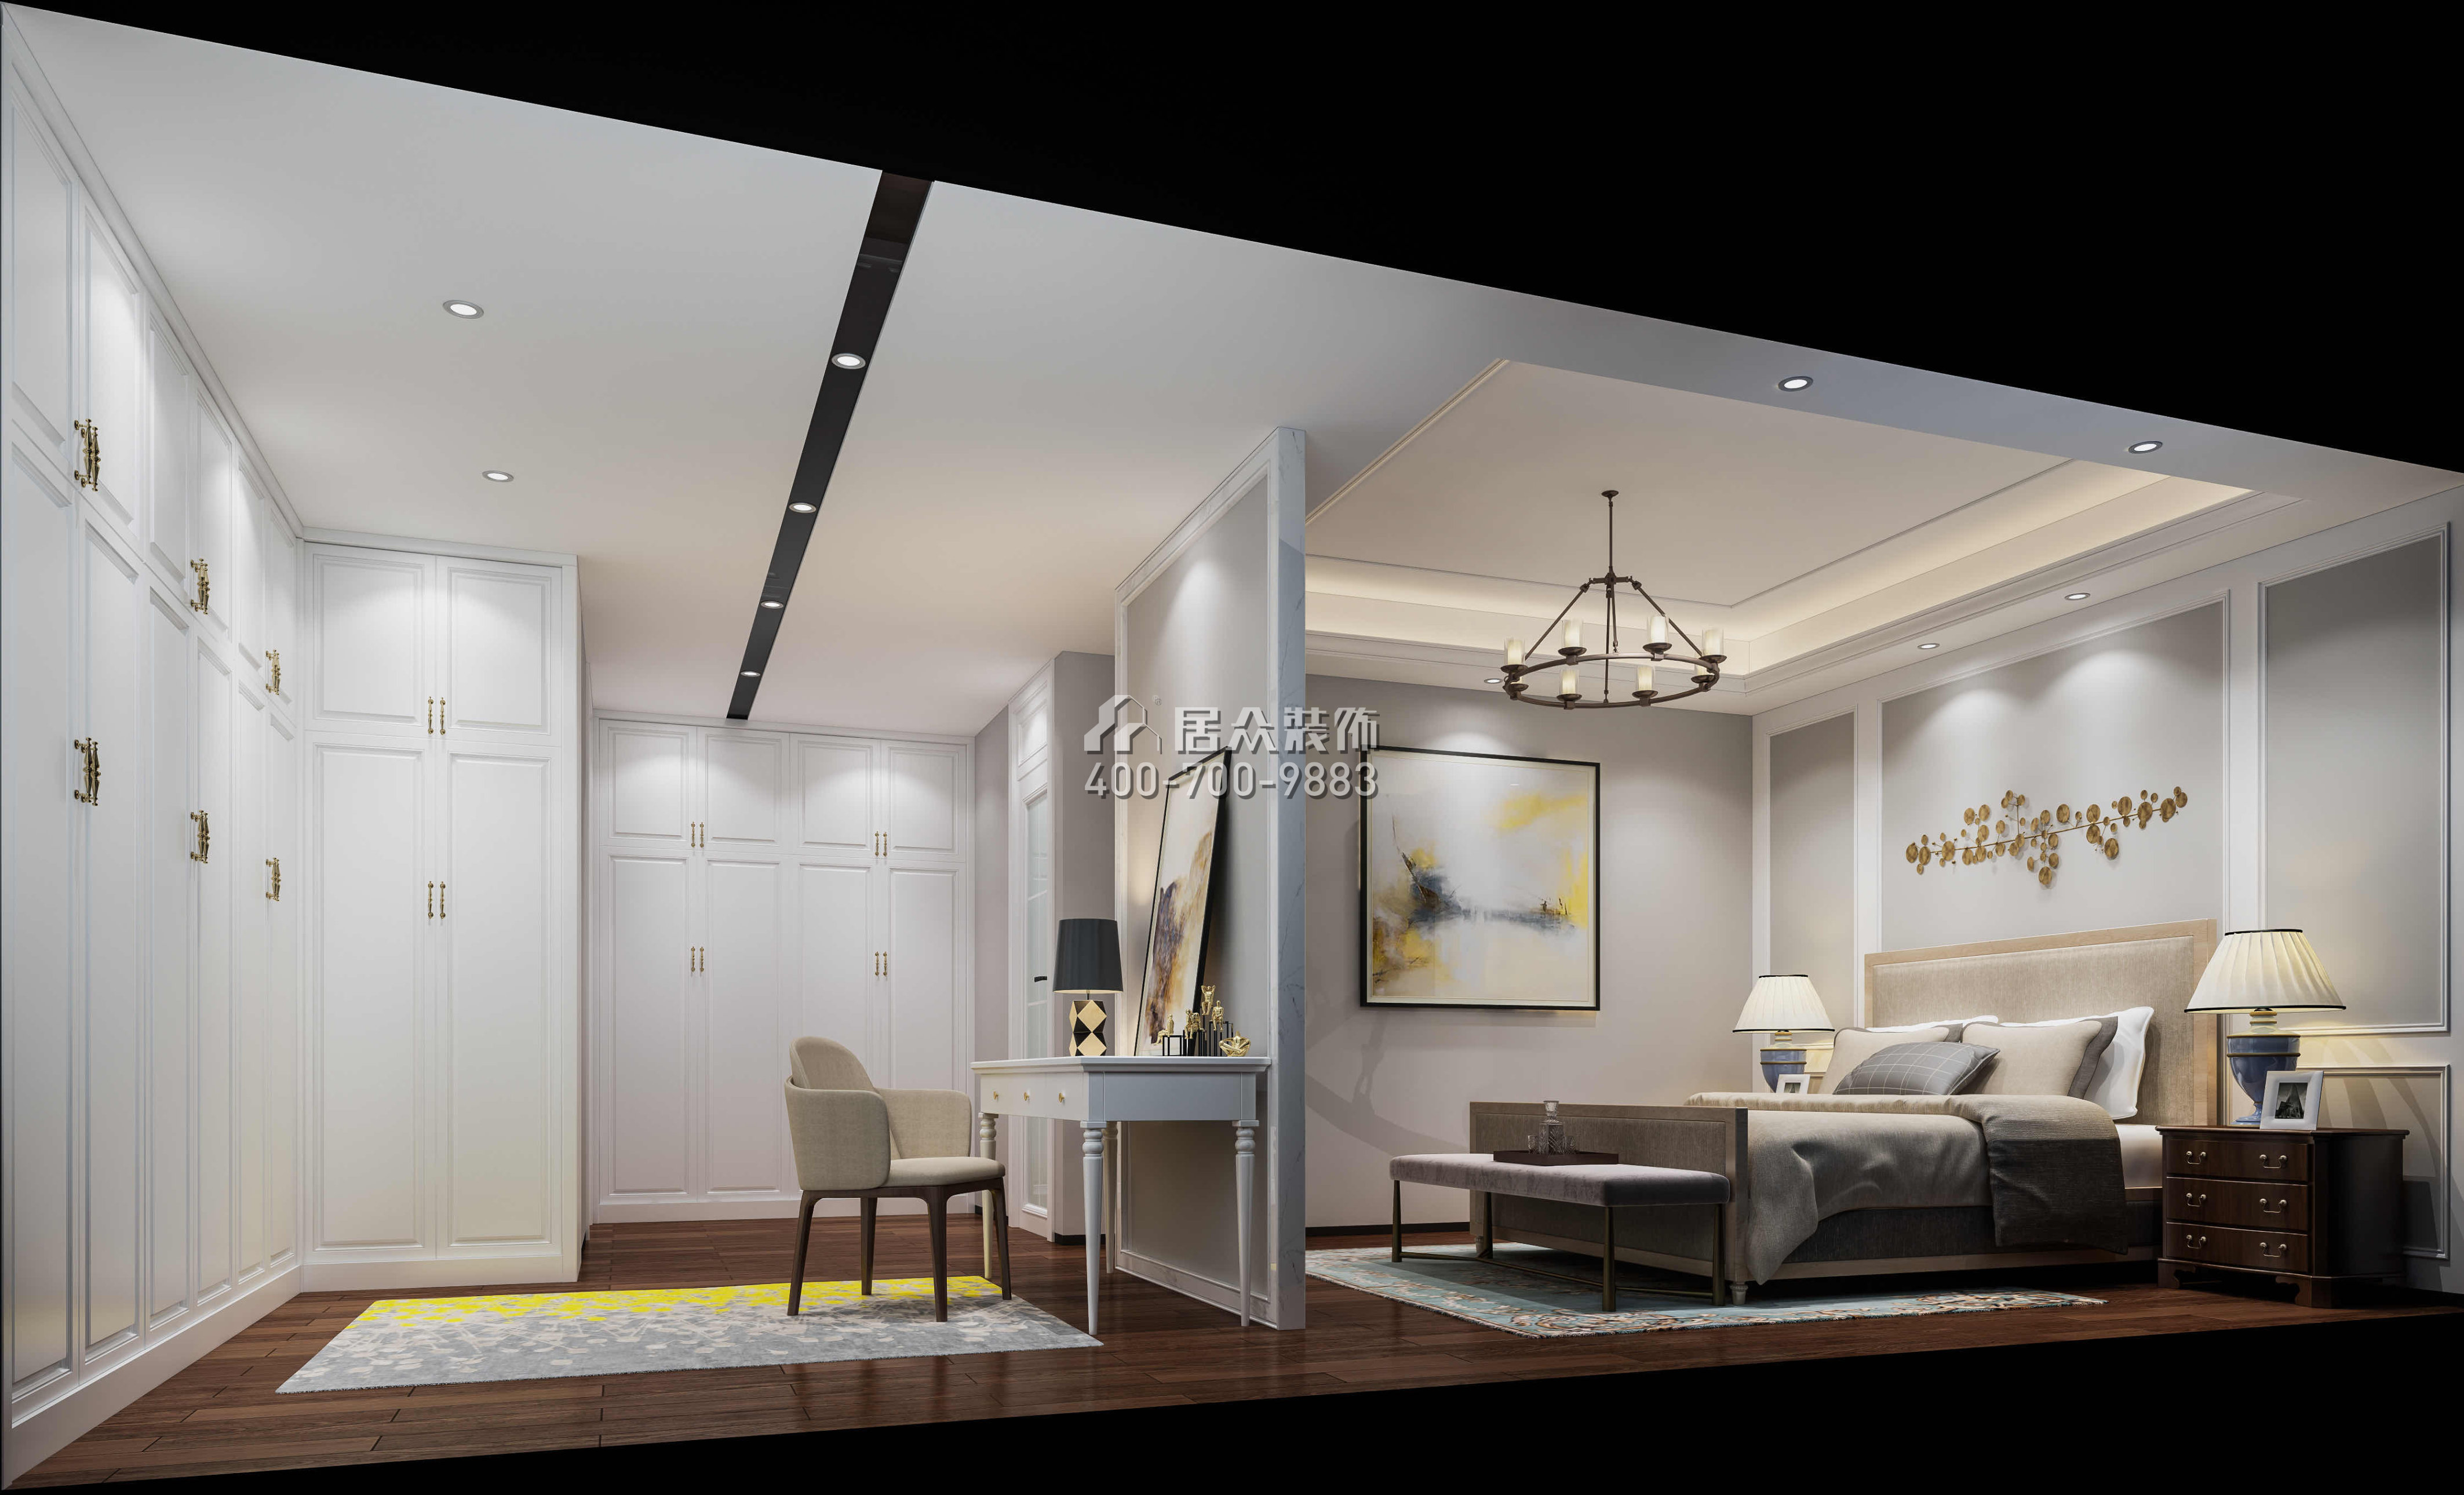 中信红树湾220平方米现代简约风格平层户型卧室装修效果图